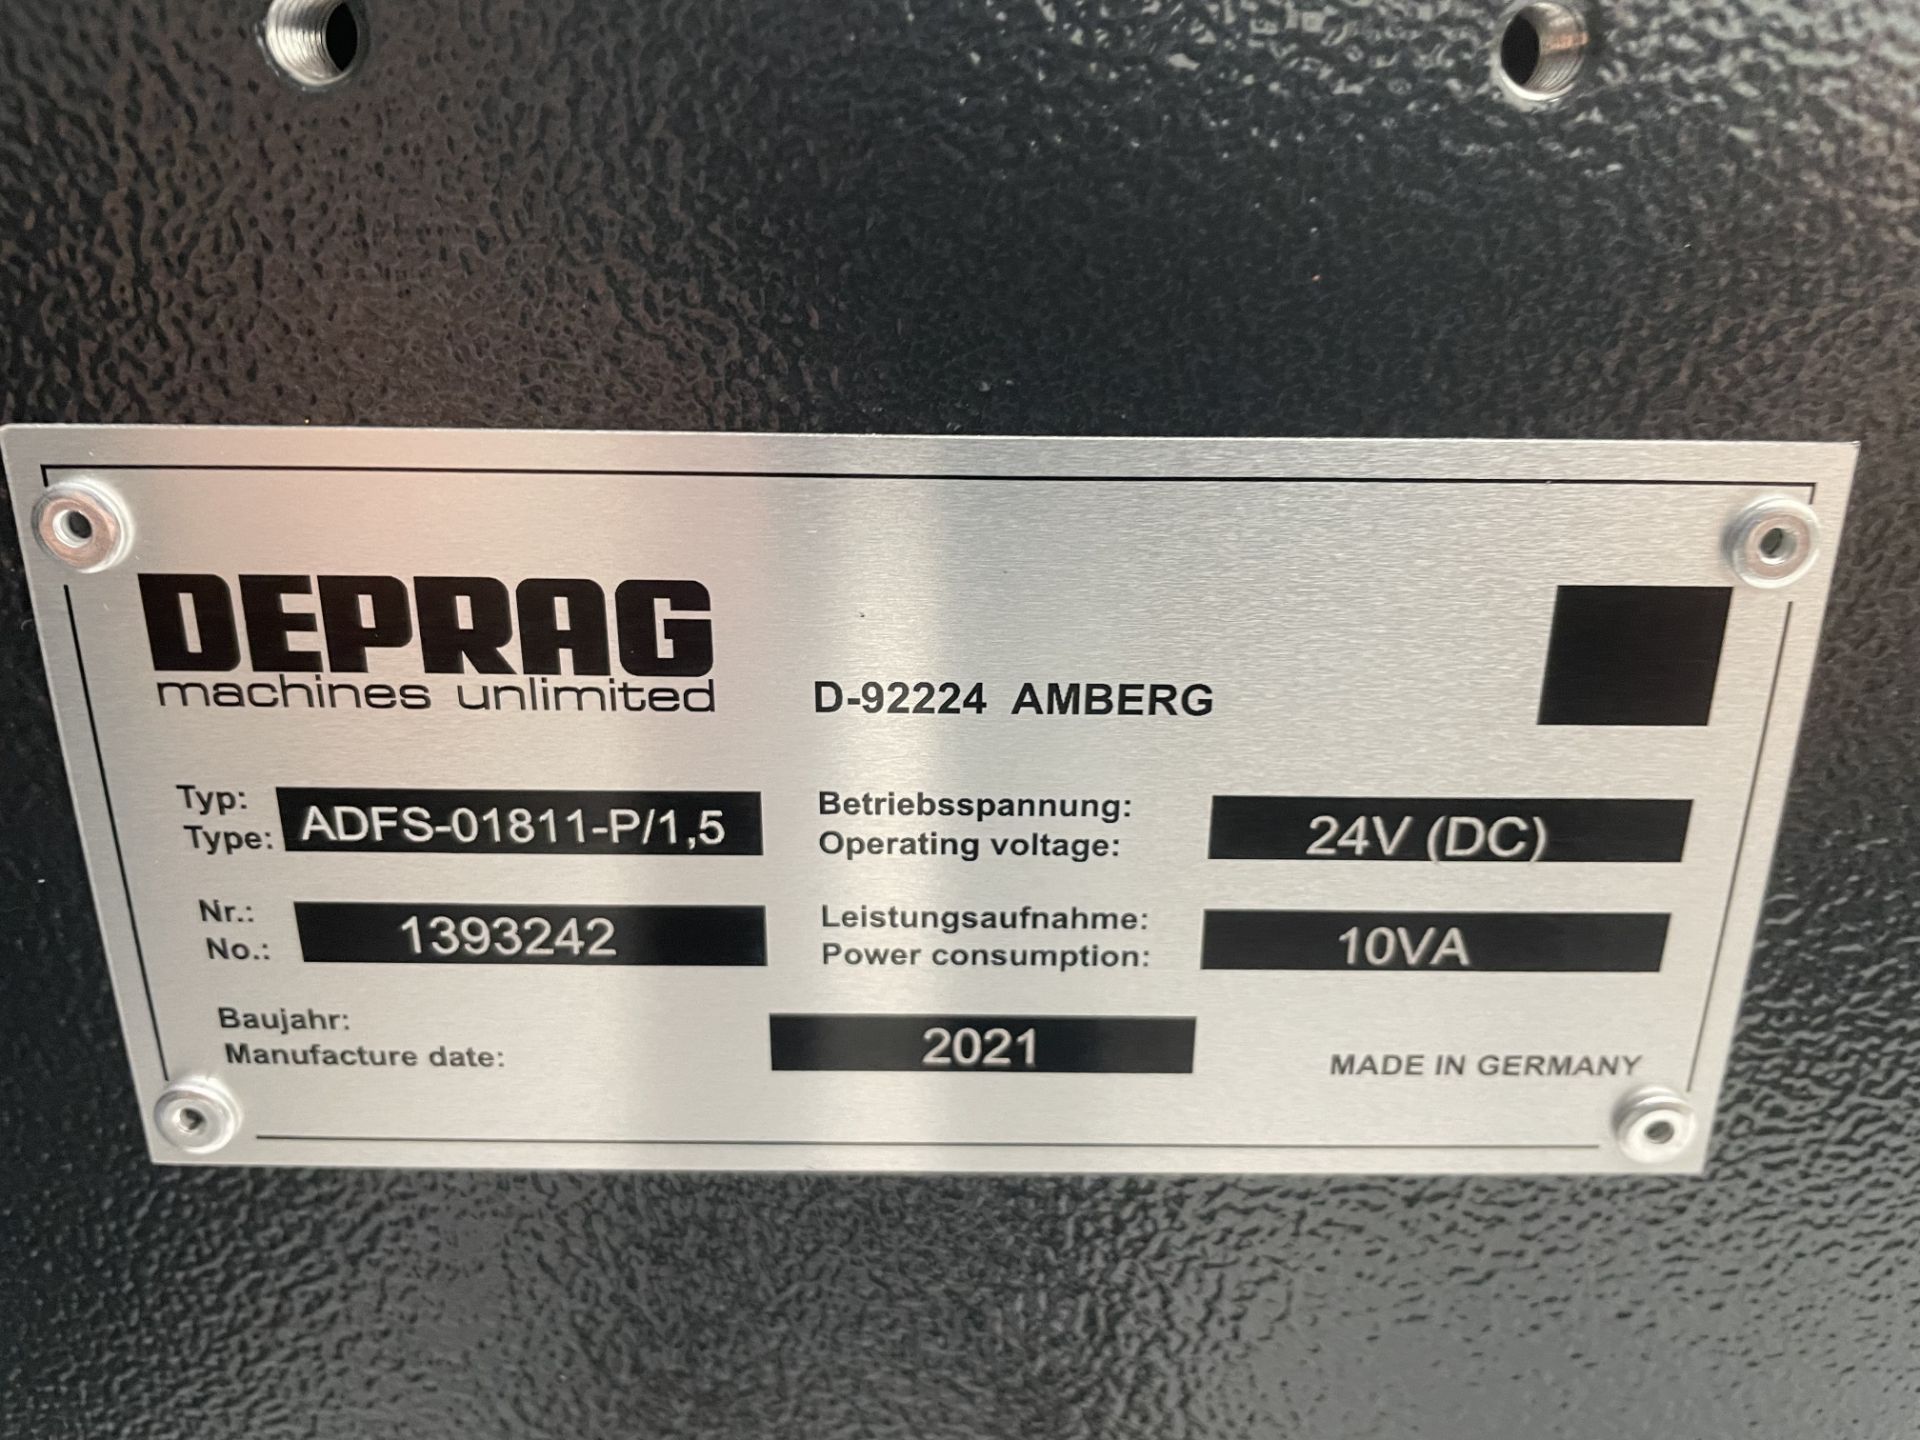 Deprag, ADFS-01811-P/15 linear bolt feeder, Serial No. 1393242 (DOM: 2021) - Image 2 of 2